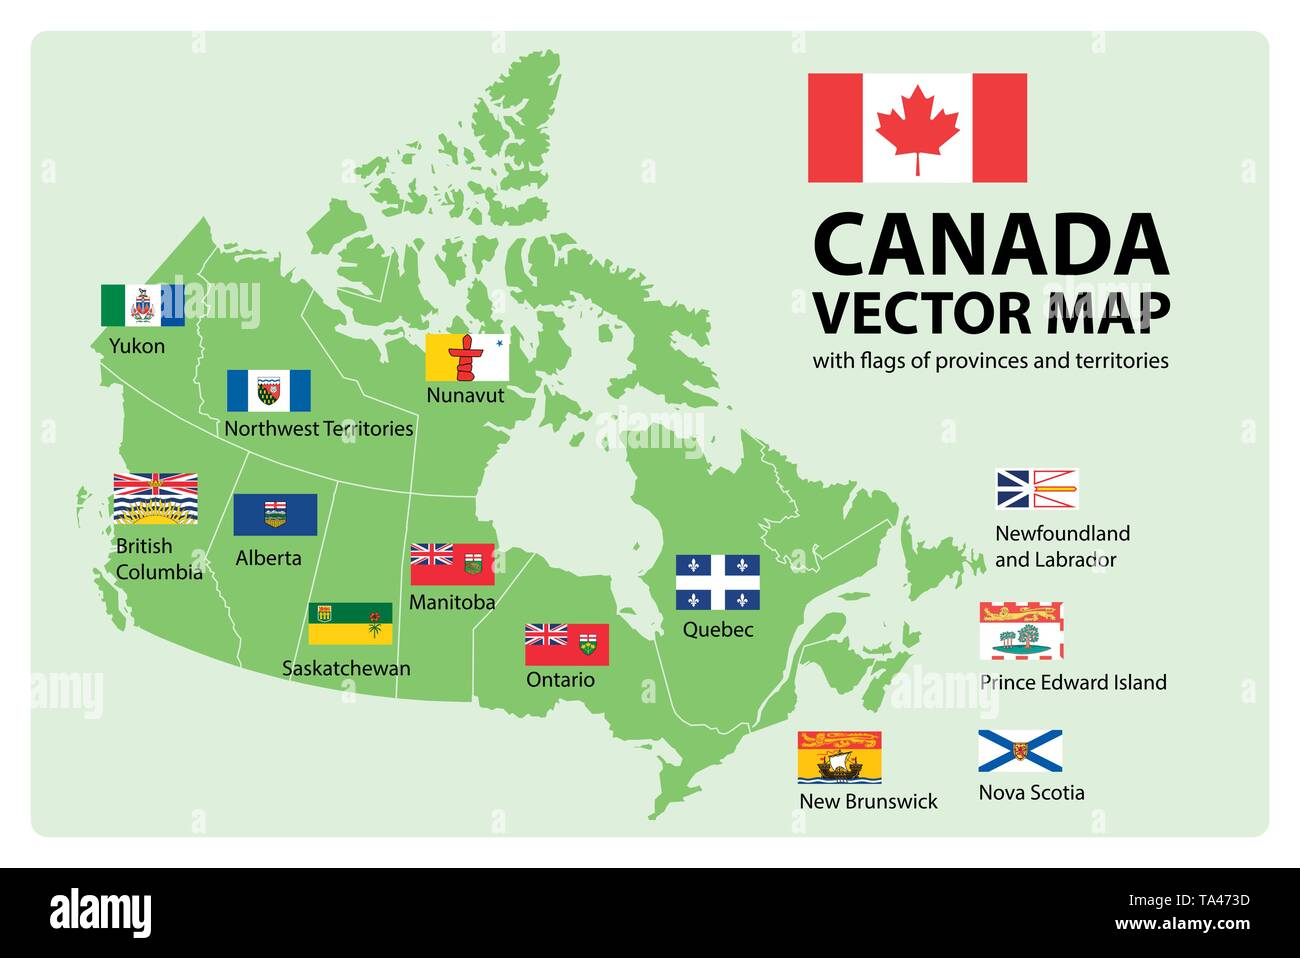 Vektor einrichten. Karte von Kanada mit den Provinzen und Territorien Grenzen und Vektor-Flags. Stock Vektor